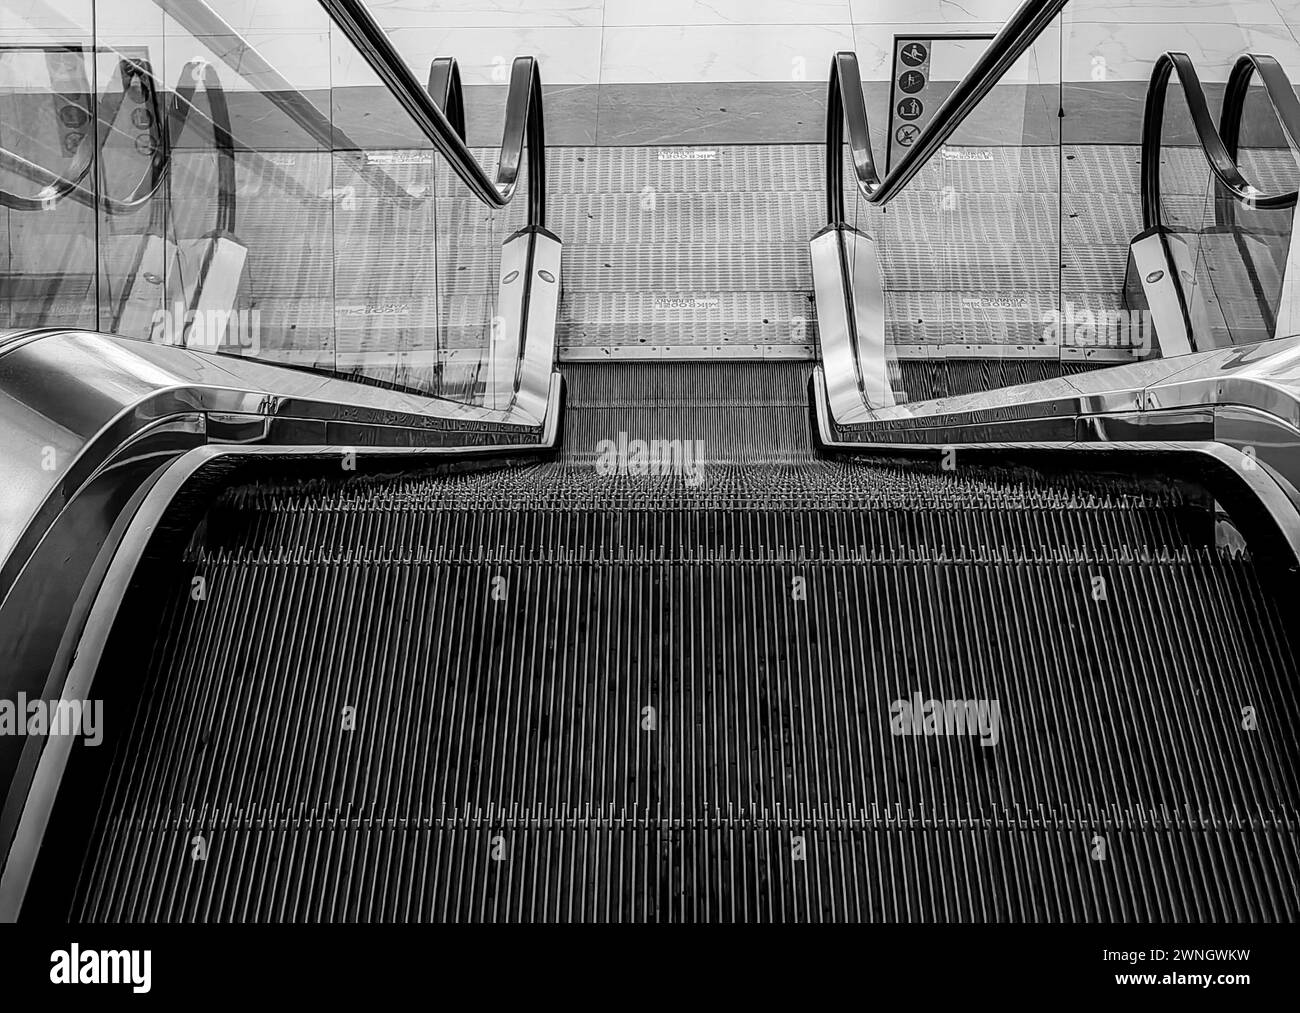 Ambition ascendante.. Escaliers électriques dans le centre commercial. Noir et blanc. Monochrome. Banque D'Images